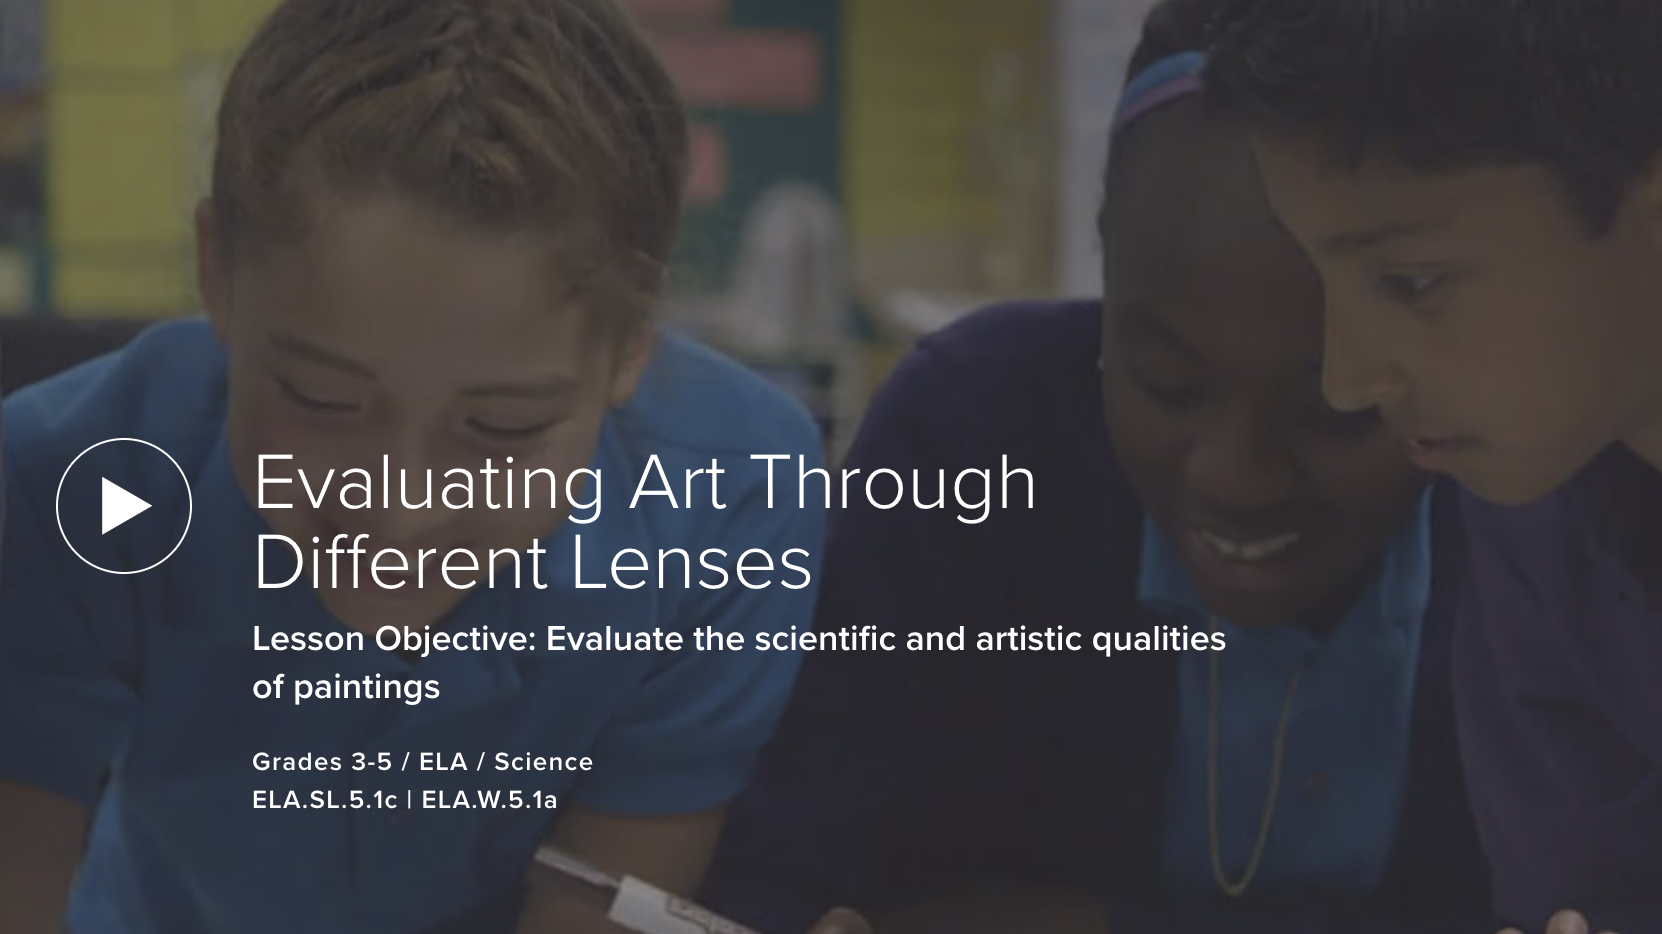  Evaluating Art Through Different Lenses